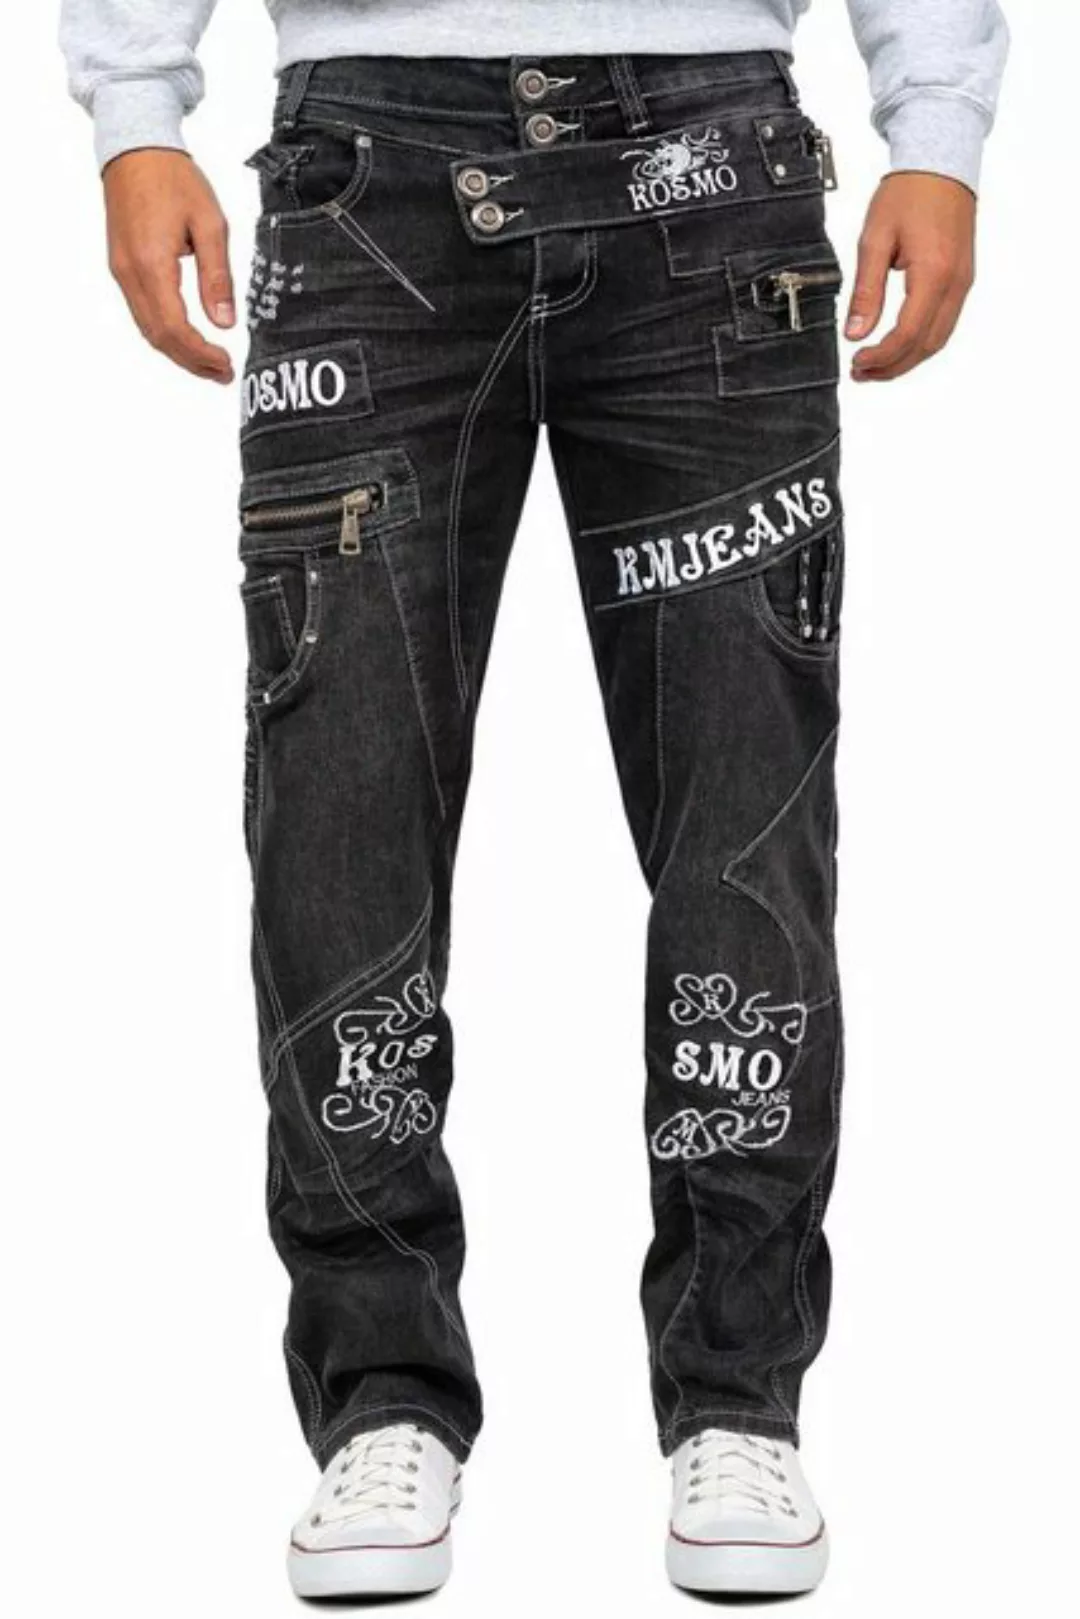 Kosmo Lupo 5-Pocket-Jeans Auffällige Herren Hose BA-KM051-2 Grau W29/L32 (1 günstig online kaufen